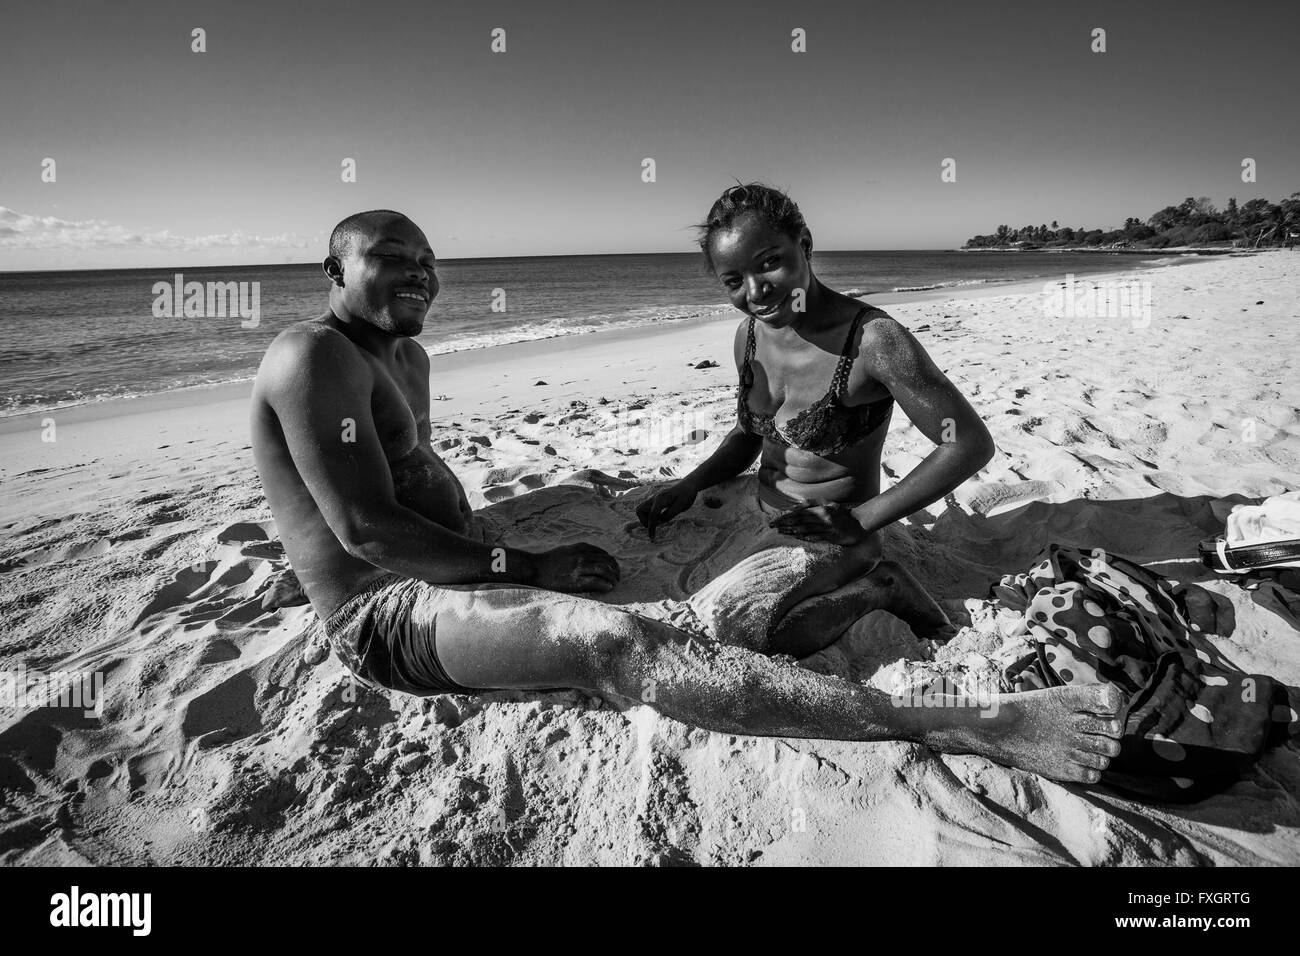 Mosambik, Mann und Frau am Strand, weißer sand, schwarz / weiß, B&W. Stockfoto